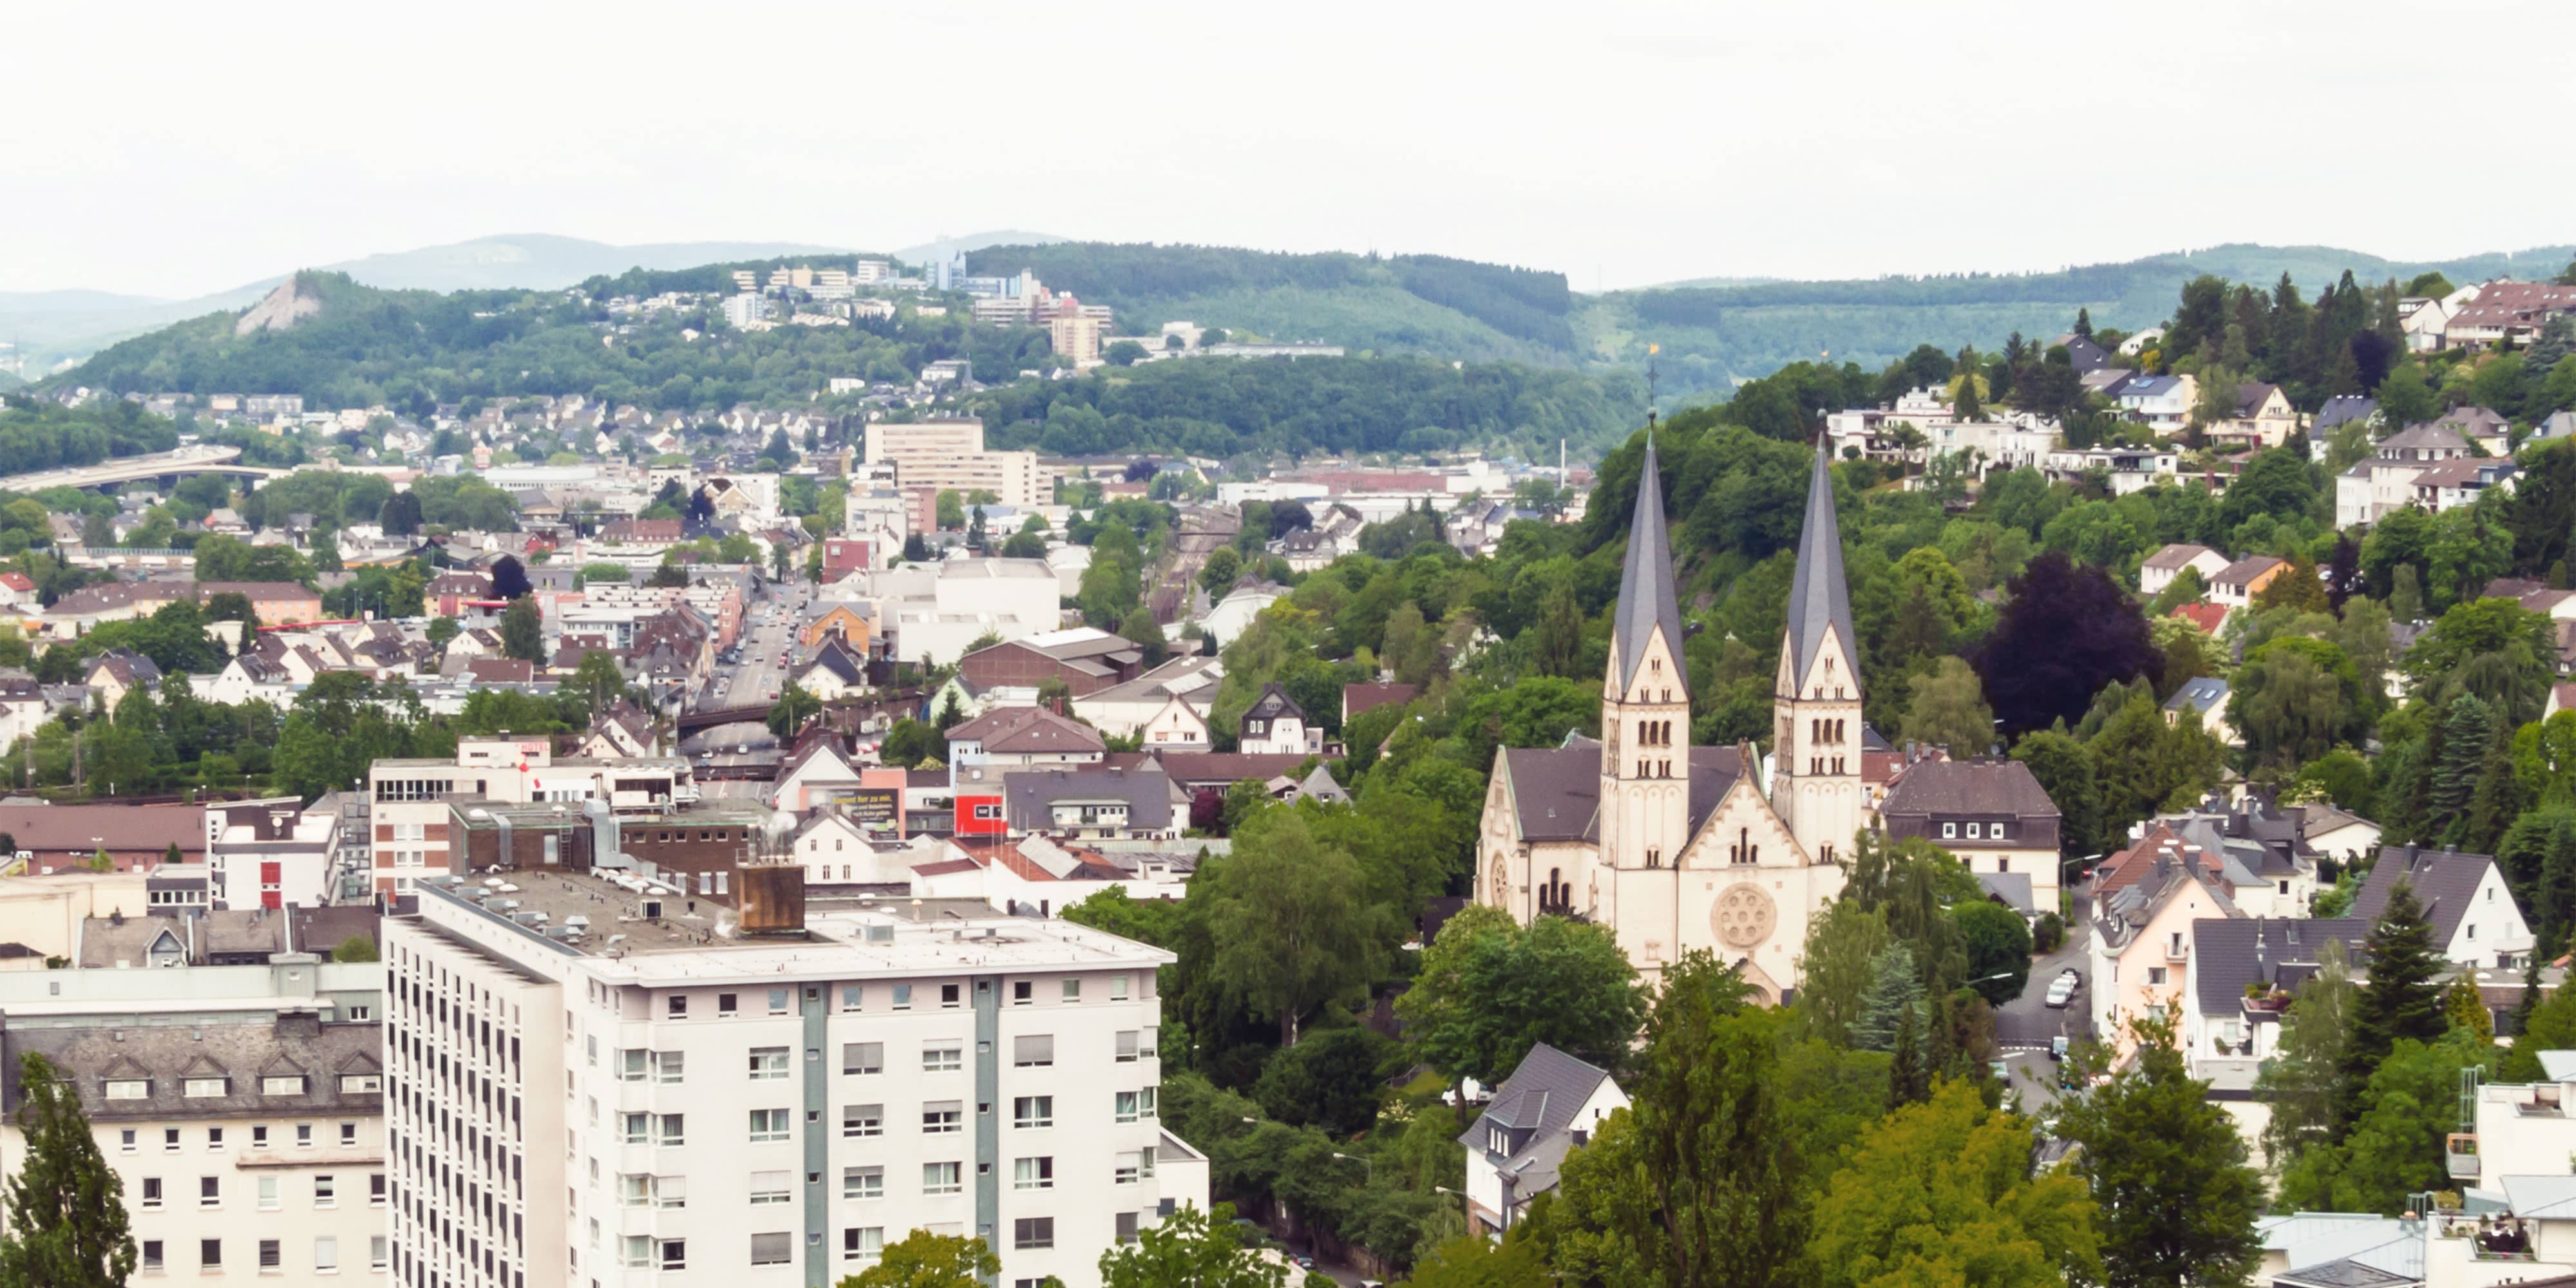 Titelbild für Infoseite "duales Studium Siegen": Sicht auf Stadt